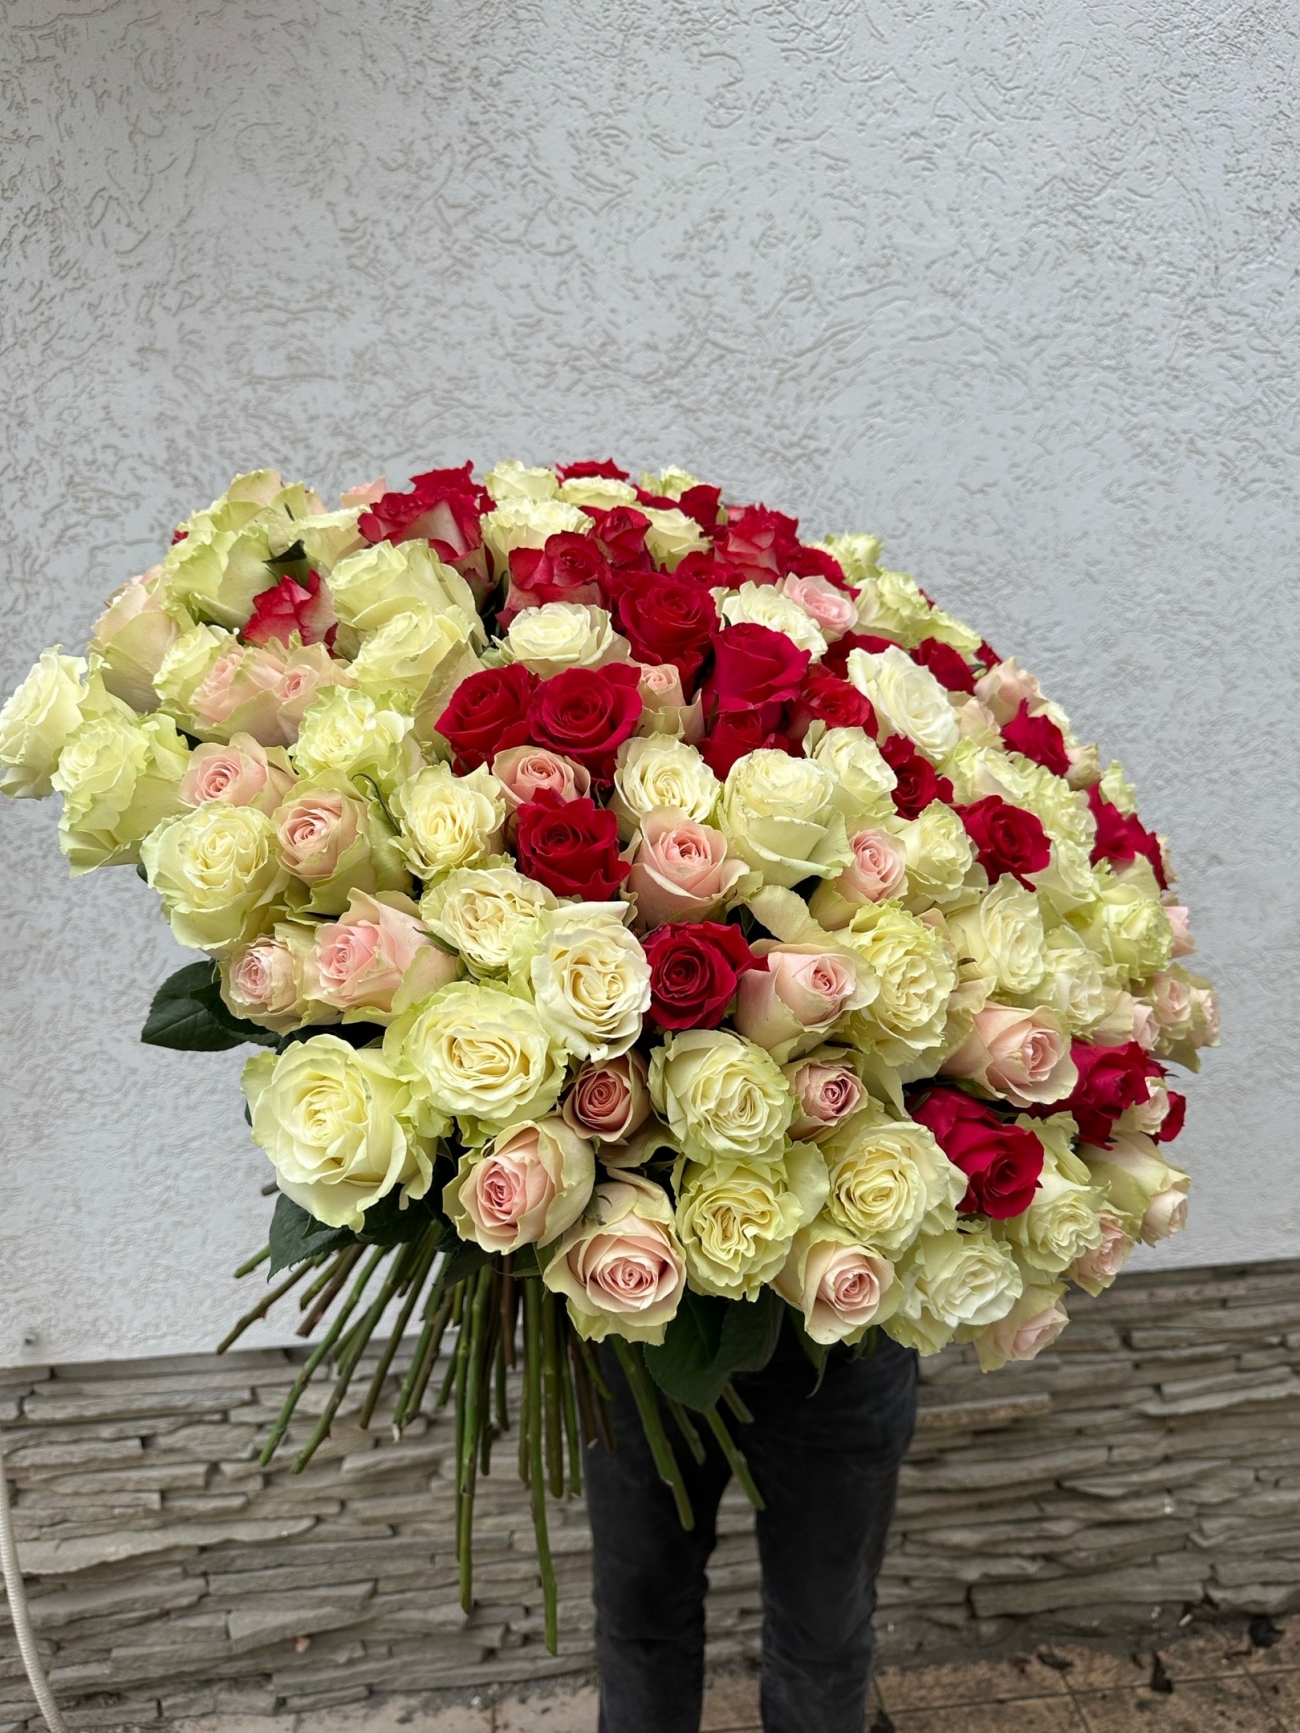 Шикарный букет из 151 розы класса Premium 60-70 см купить в Севастополе |  Sevcvetok